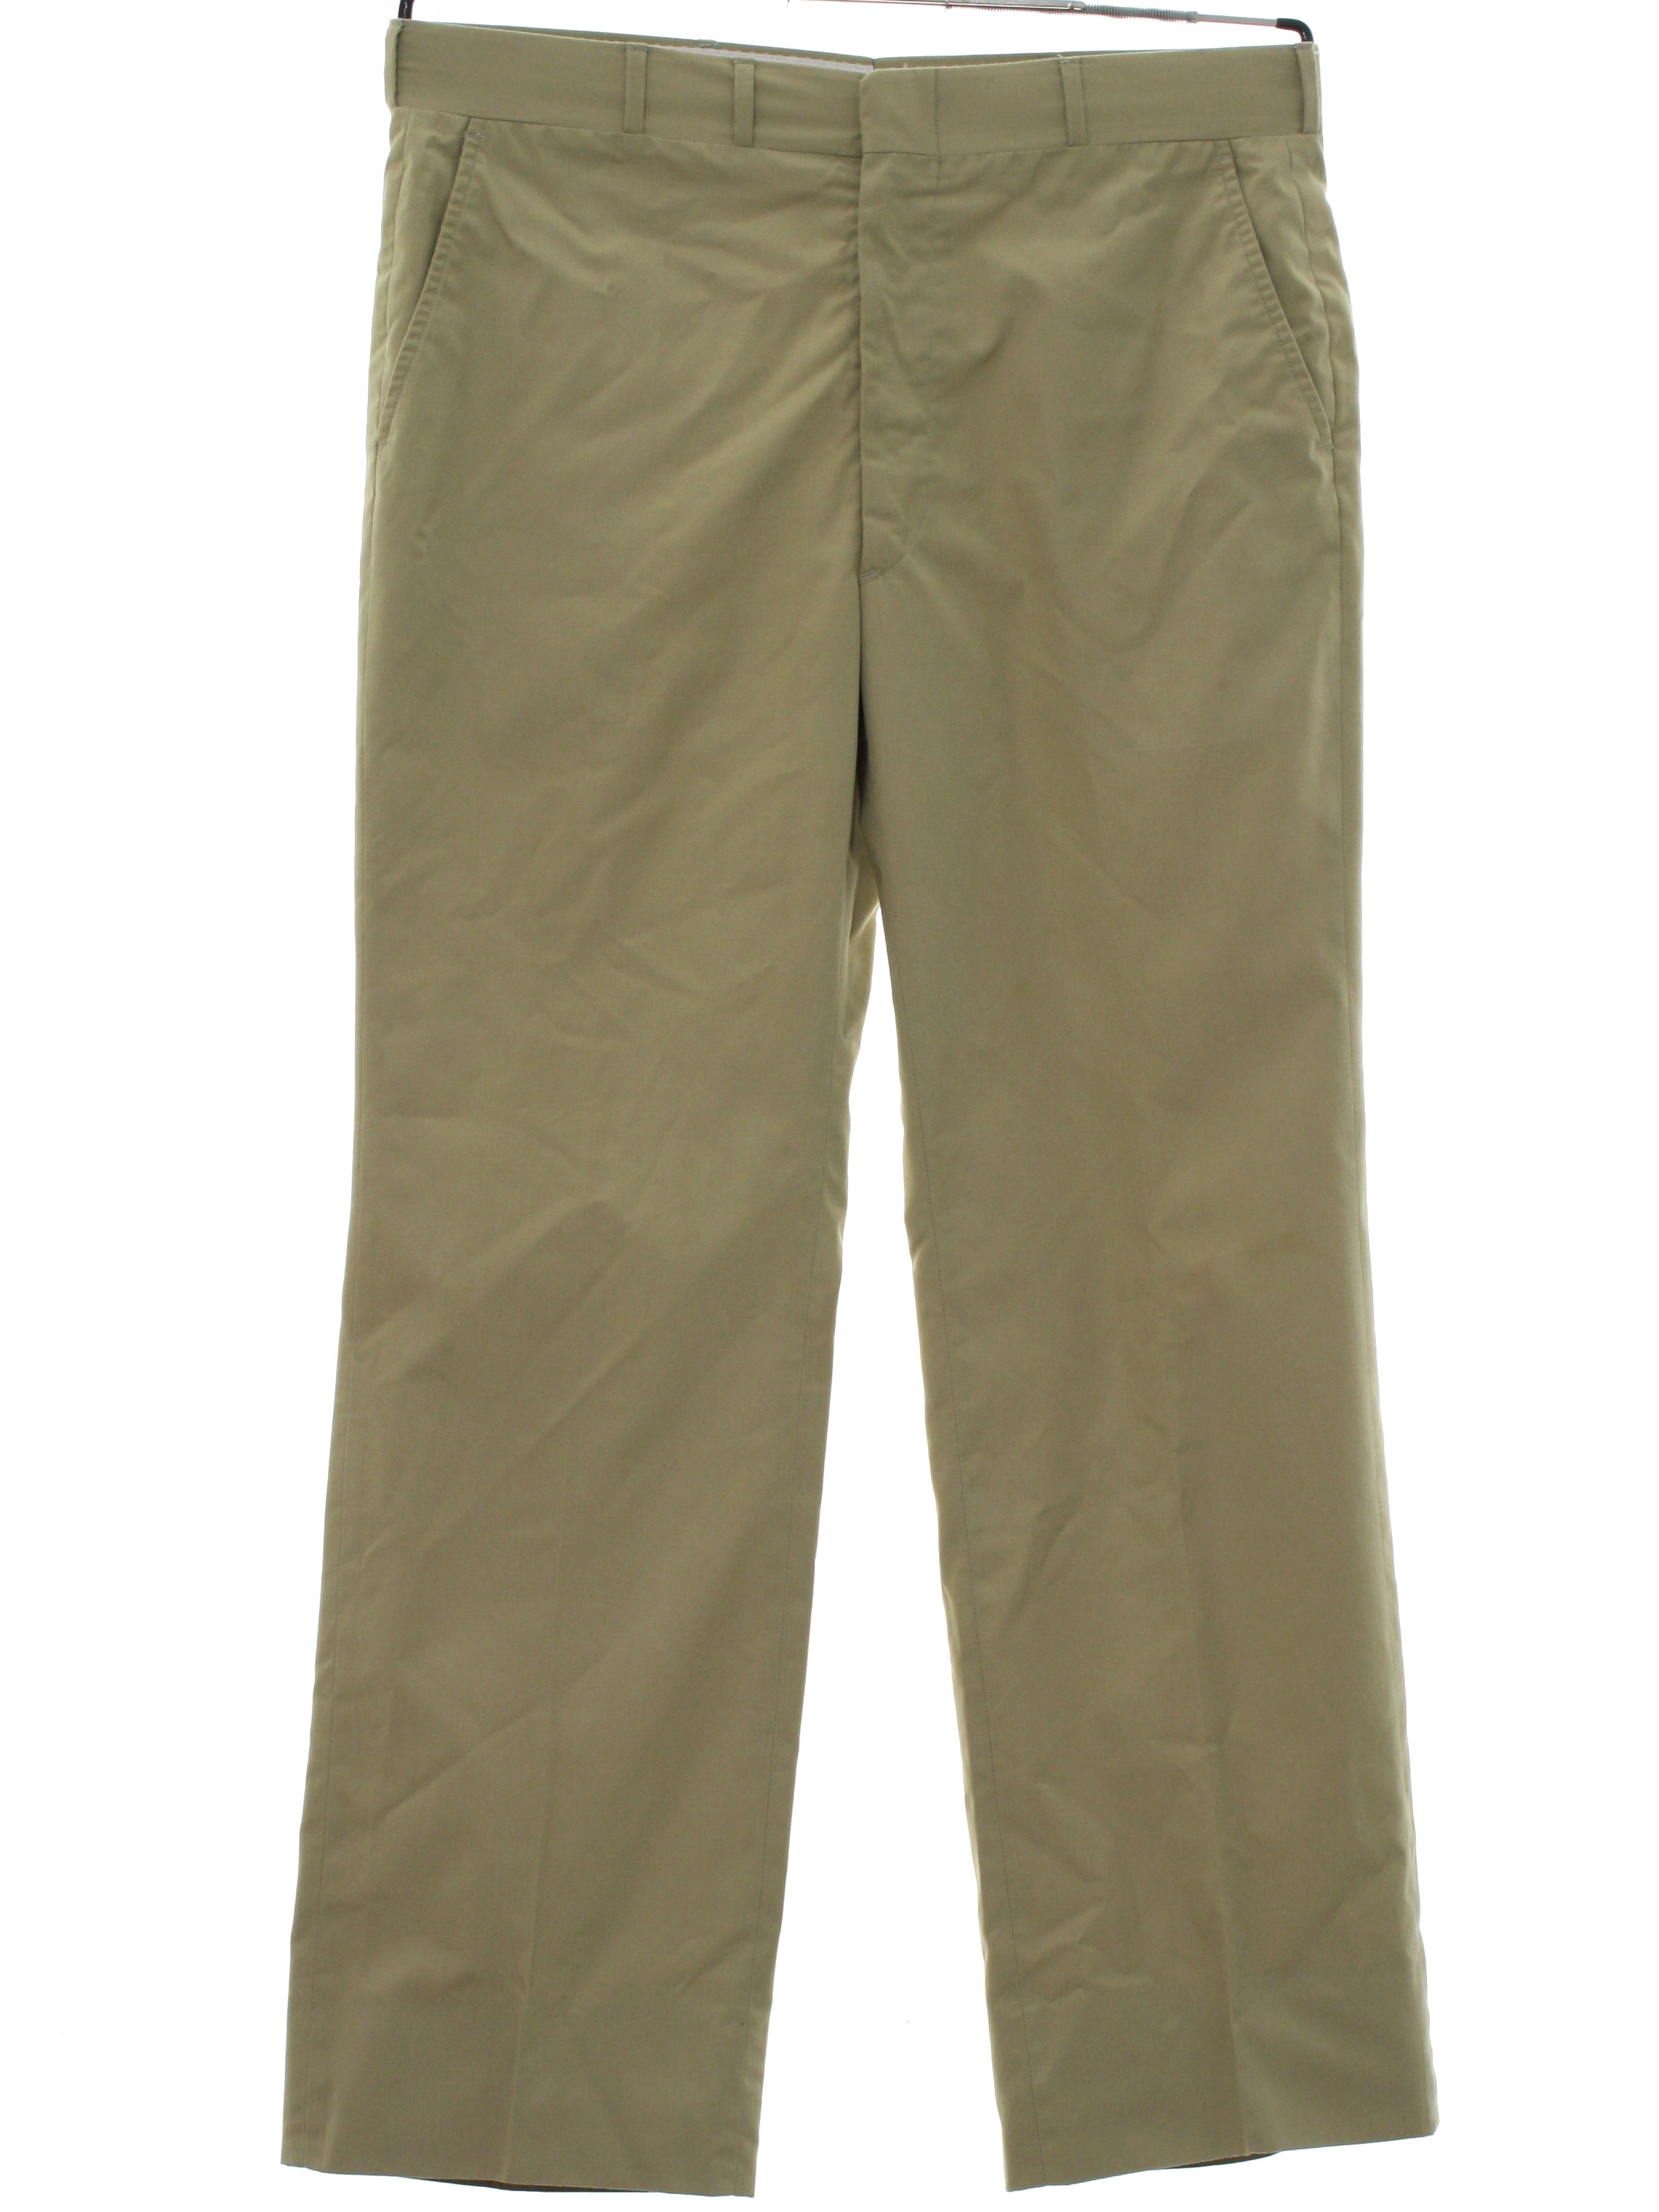 Retro 1980's Pants (Corbin) : 80s -Corbin- Mens khaki solid colored ...